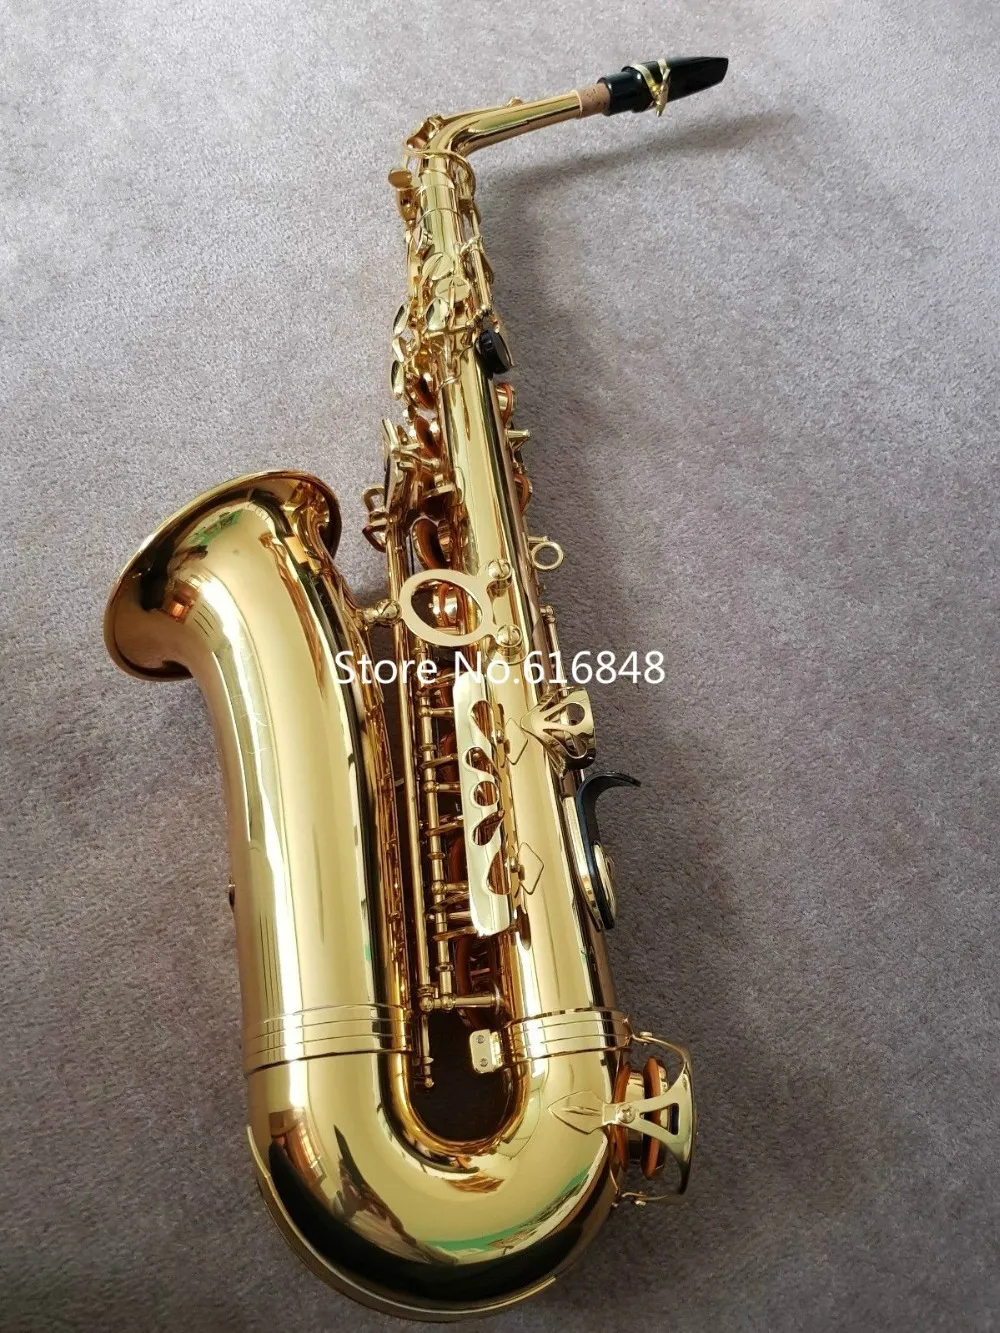 Nowy ARIVEL JUPITER JAS-767 Wysokiej jakości Alto Eb Tone Mosiądz Saksofon Złoty Lakier E-Płaski Tone Saksofon z Sector Press Rękawice